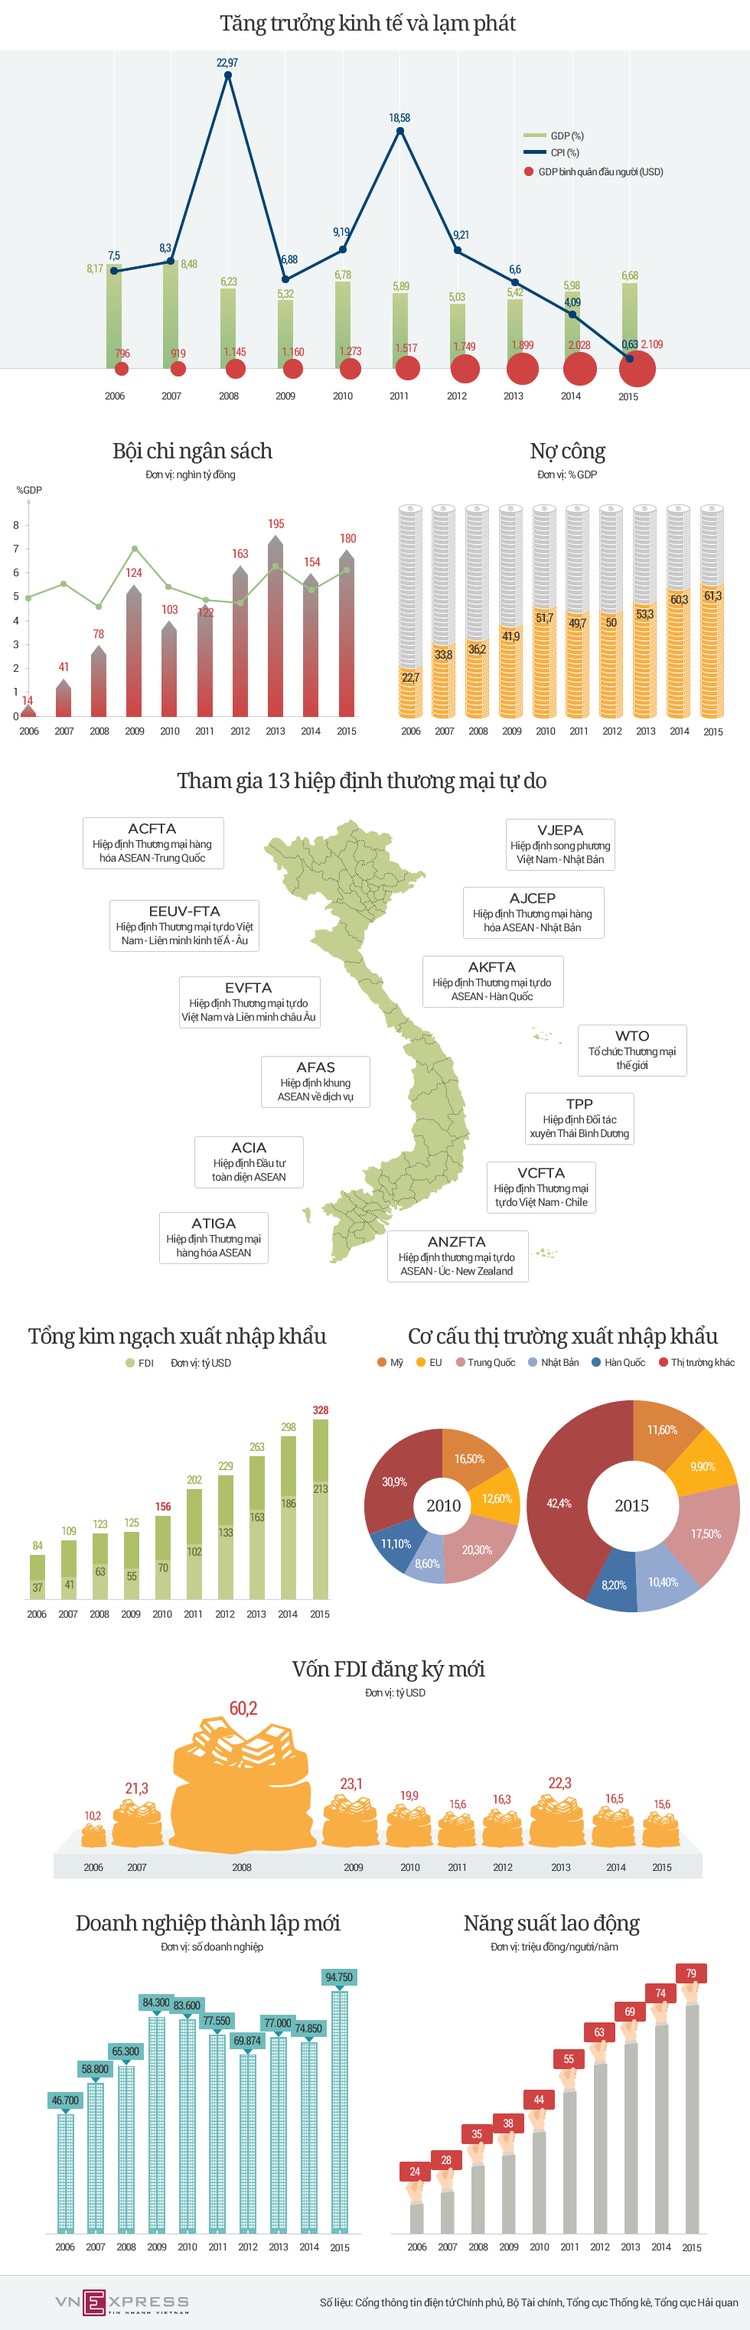 Kinh tế Việt Nam trong 2 nhiệm kỳ của Thủ tướng Nguyễn Tấn Dũng